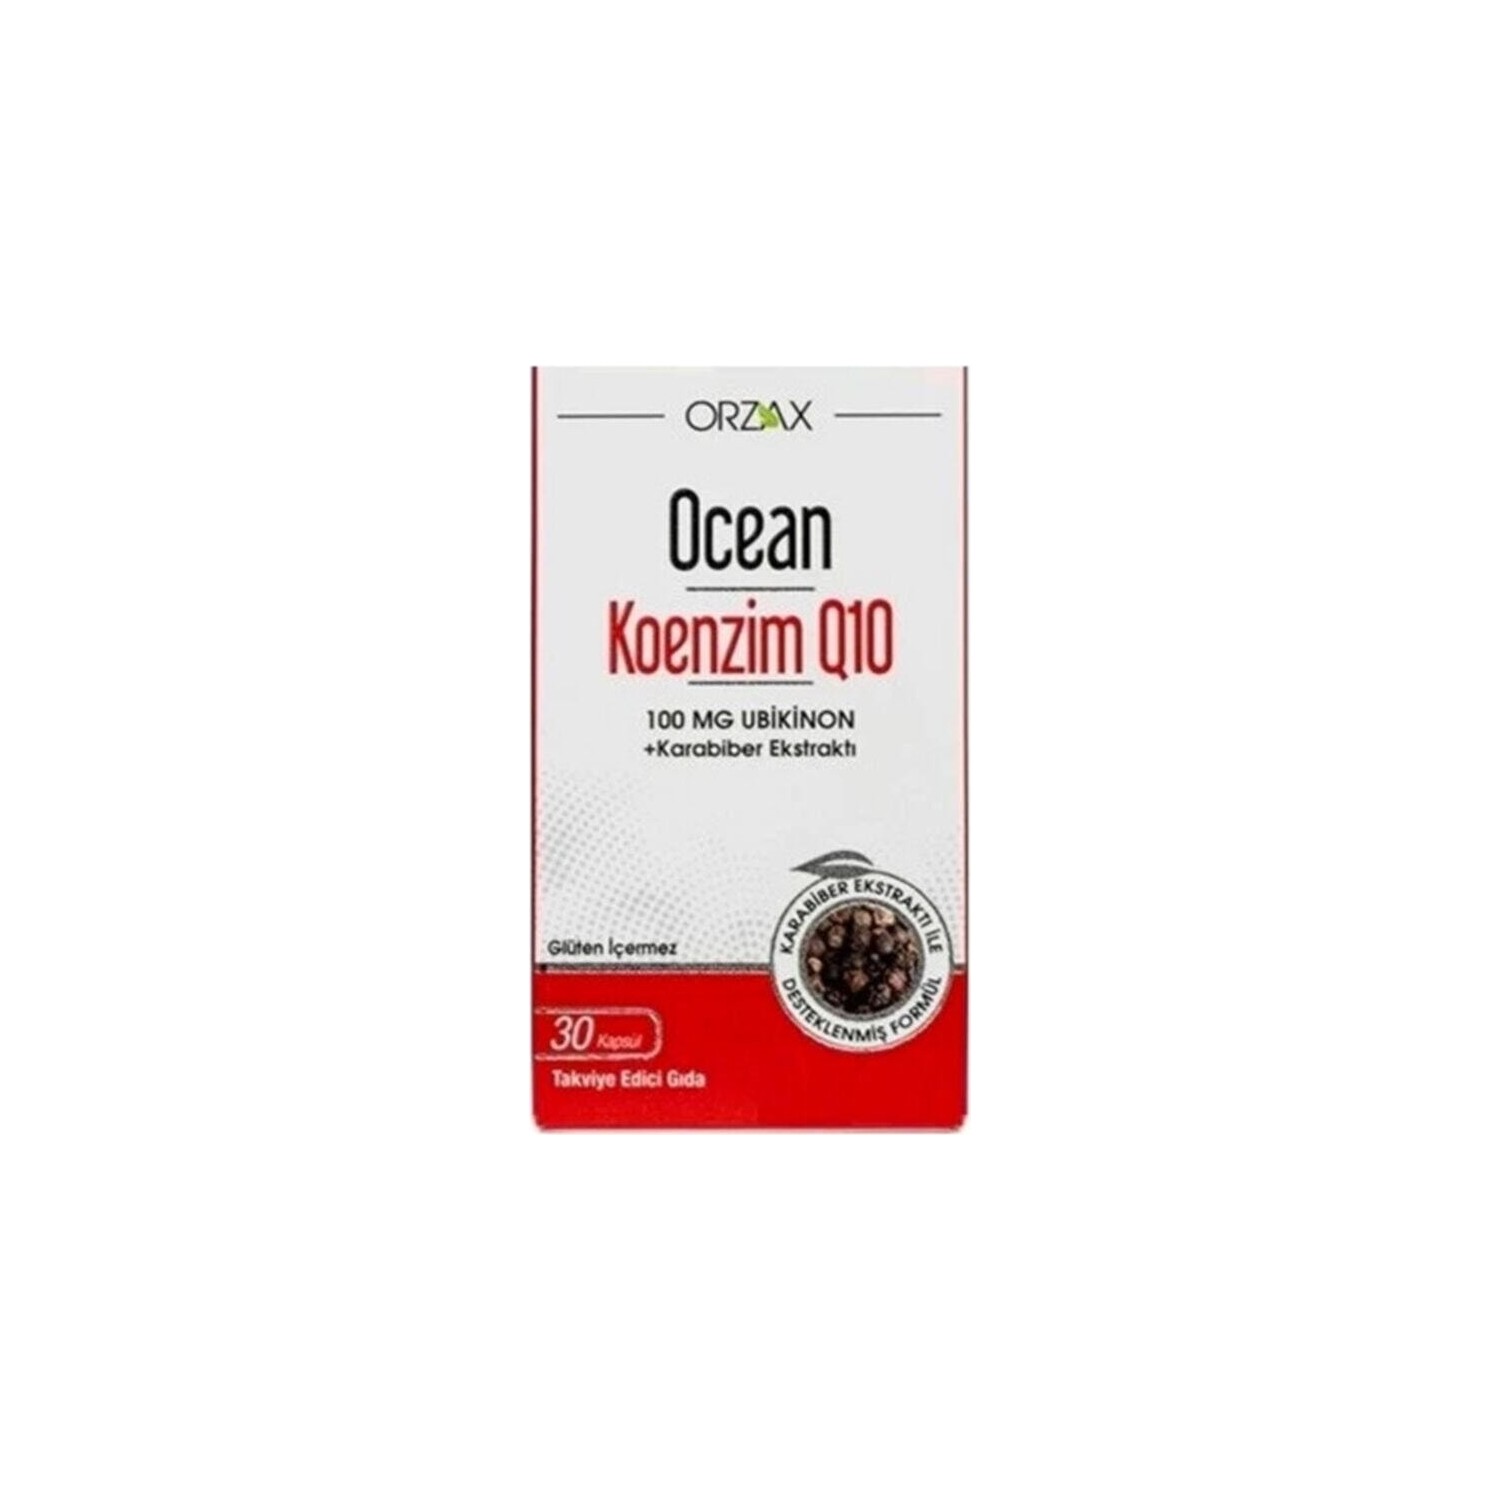 dr mercola липосомальный коэнзим q10 100 мг 30 капсул Коэнзим Q10 Ocean 100 мг, 30 капсул